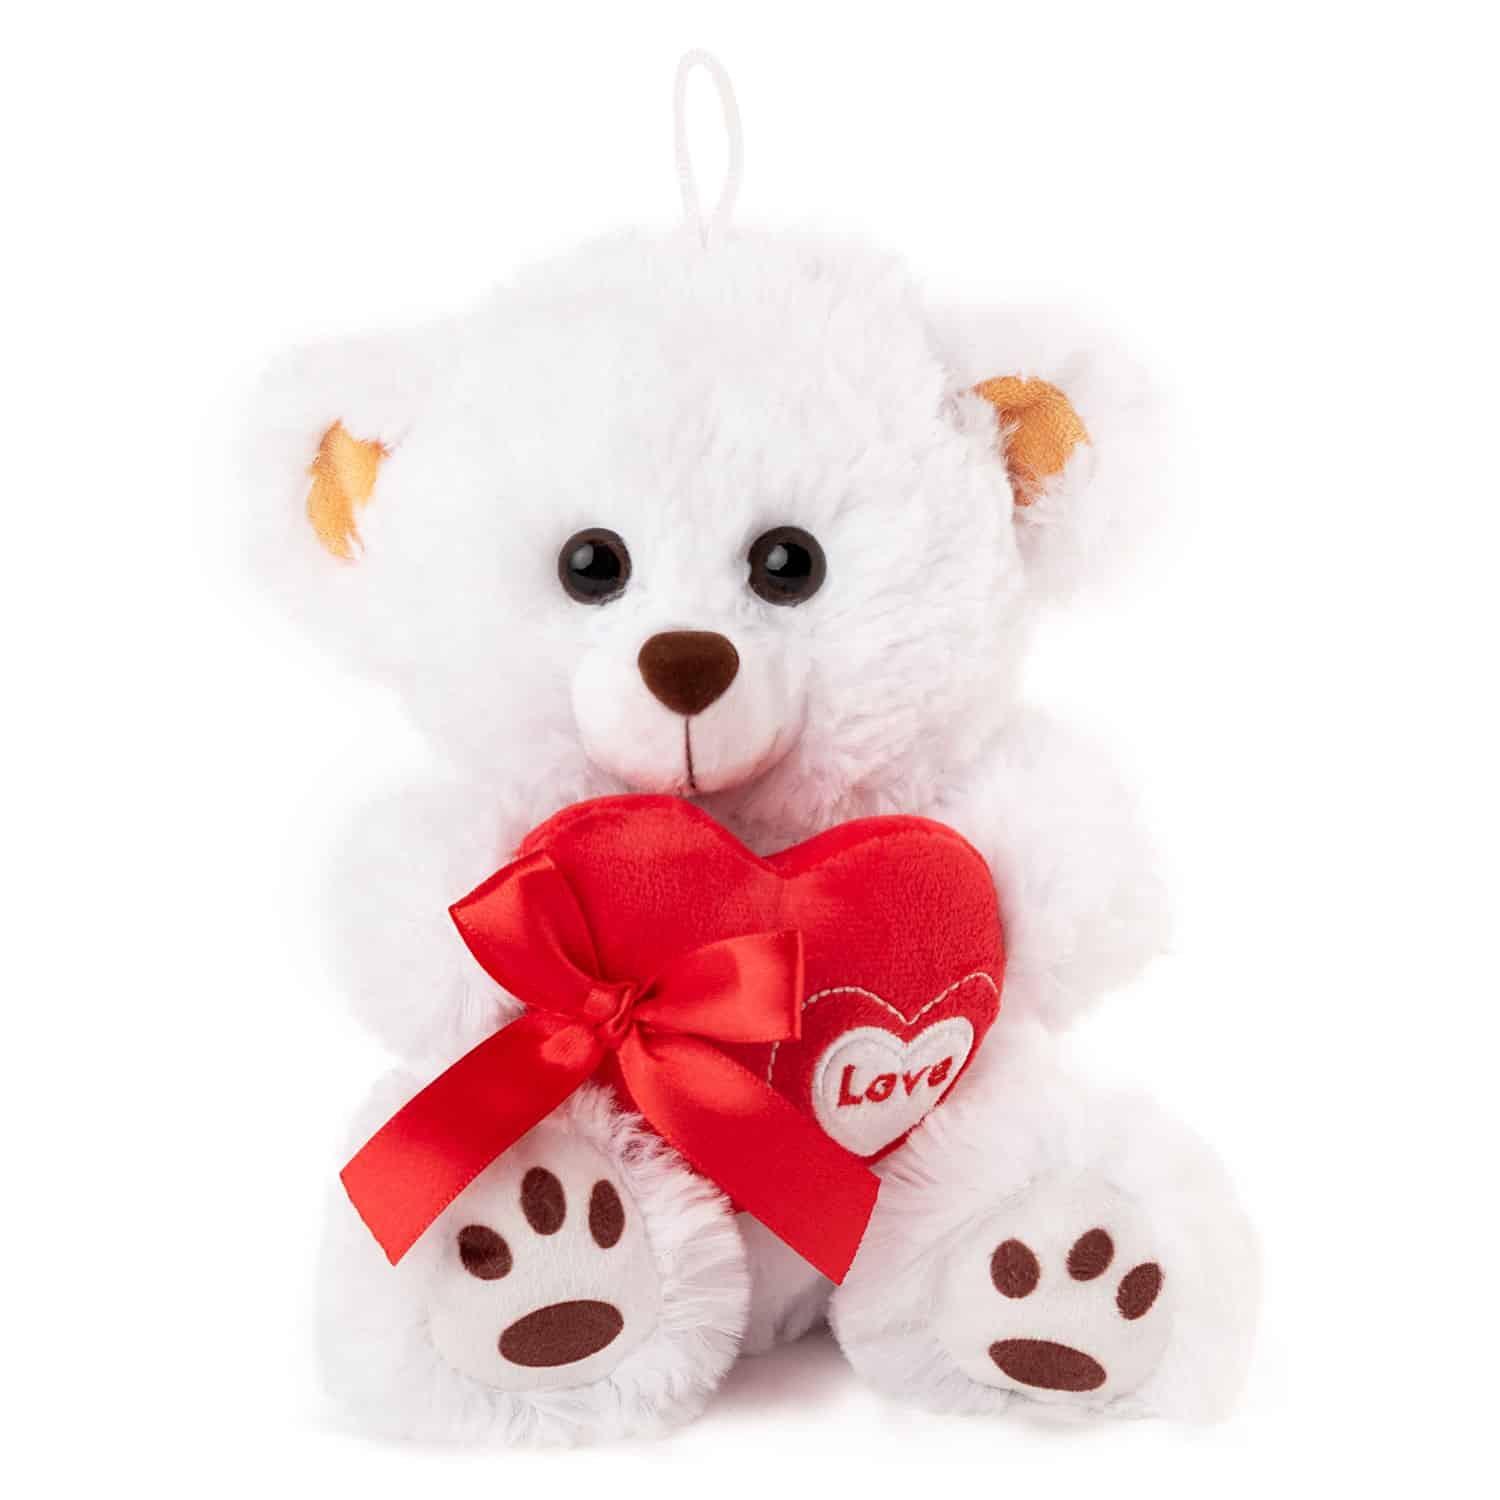 Bear holding red heart - White